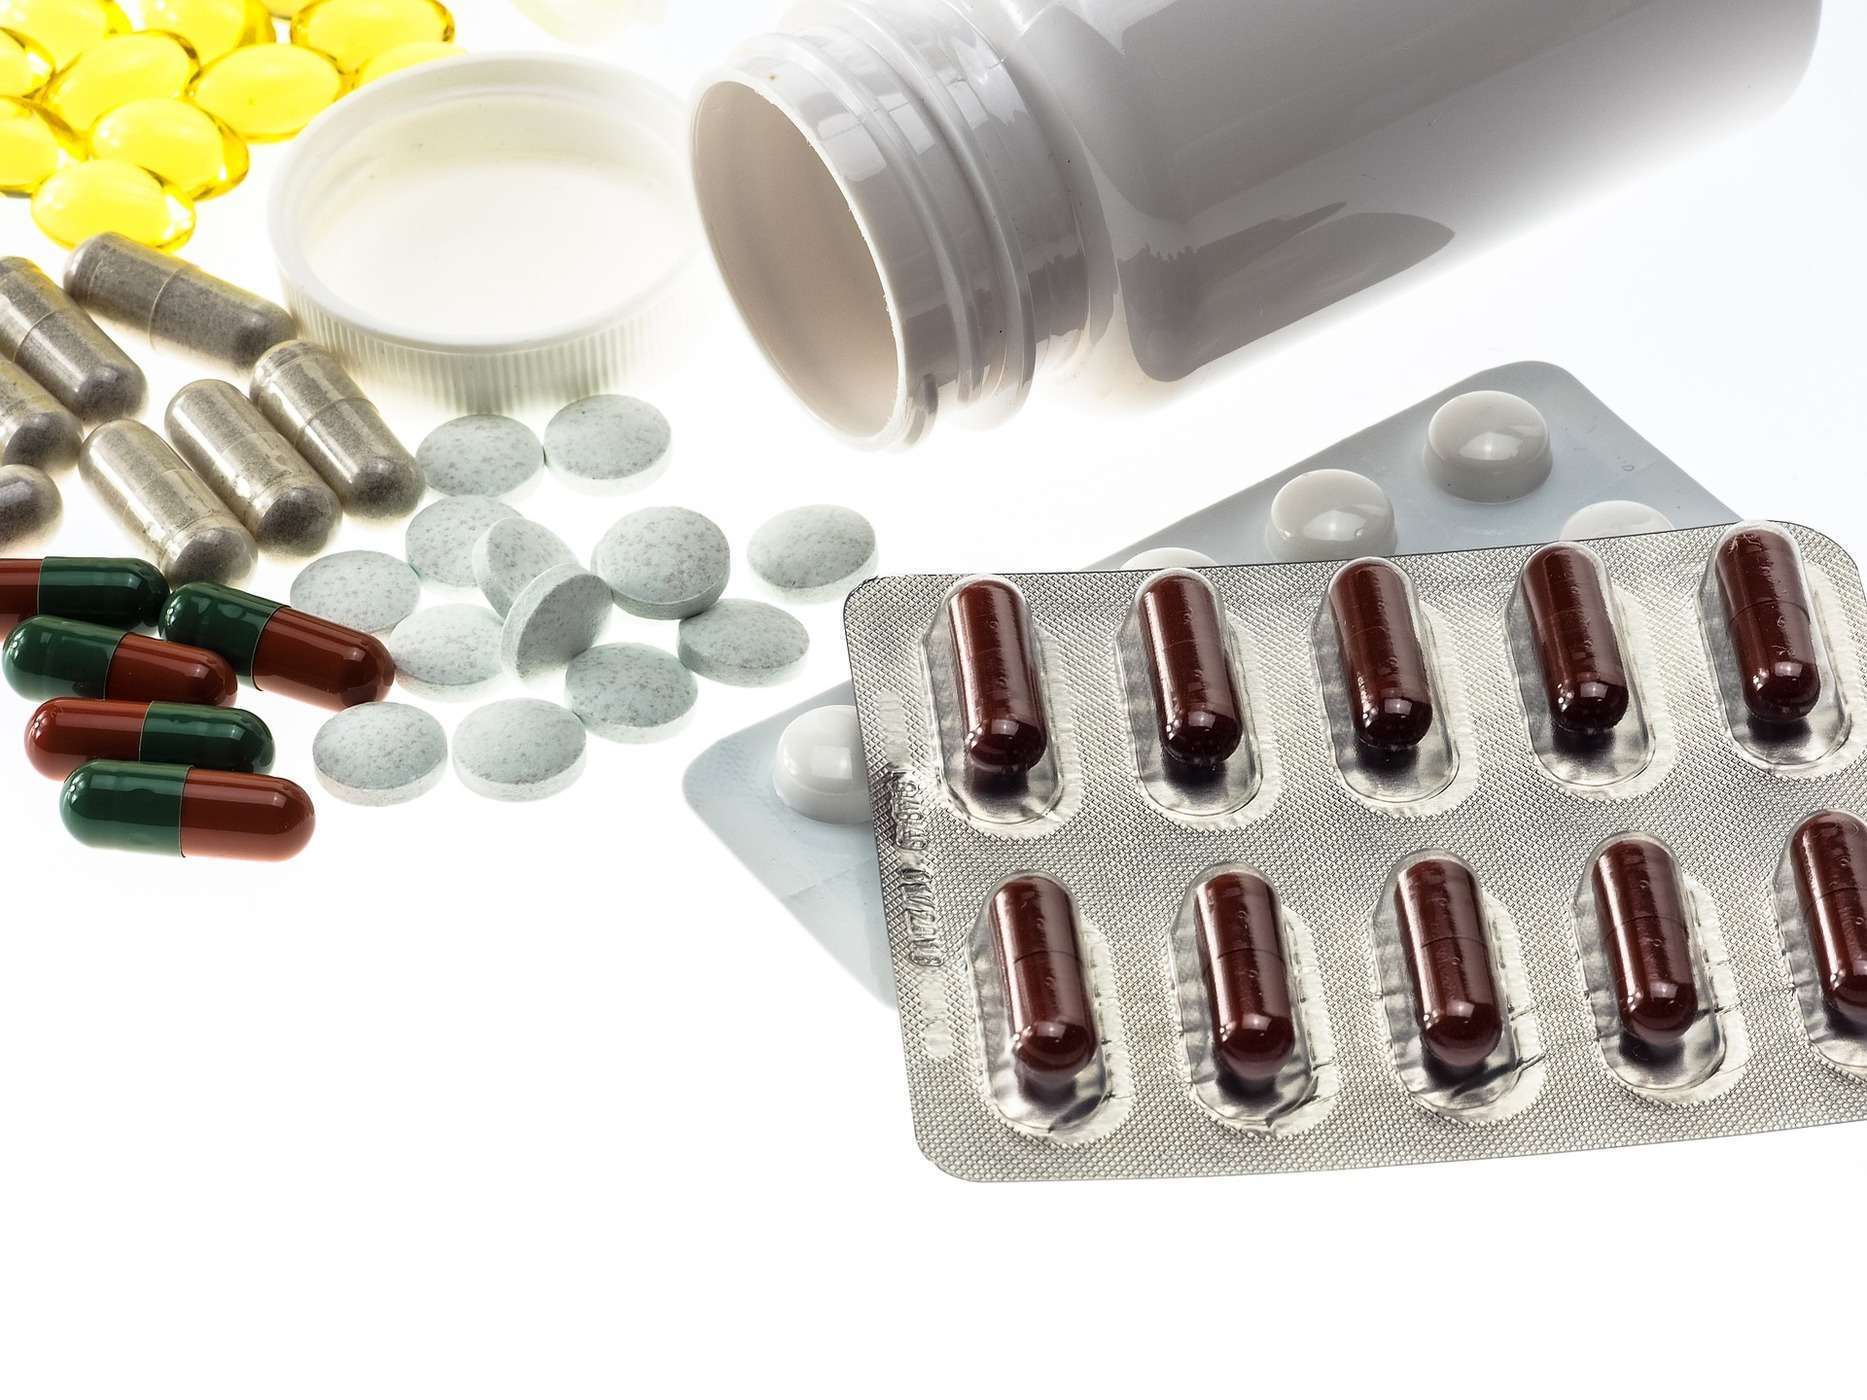 סיכון לתופעות לוואי של תרופות אנטי-רטרו-ויראליות (ARVs) בטווח הקצר והארוך